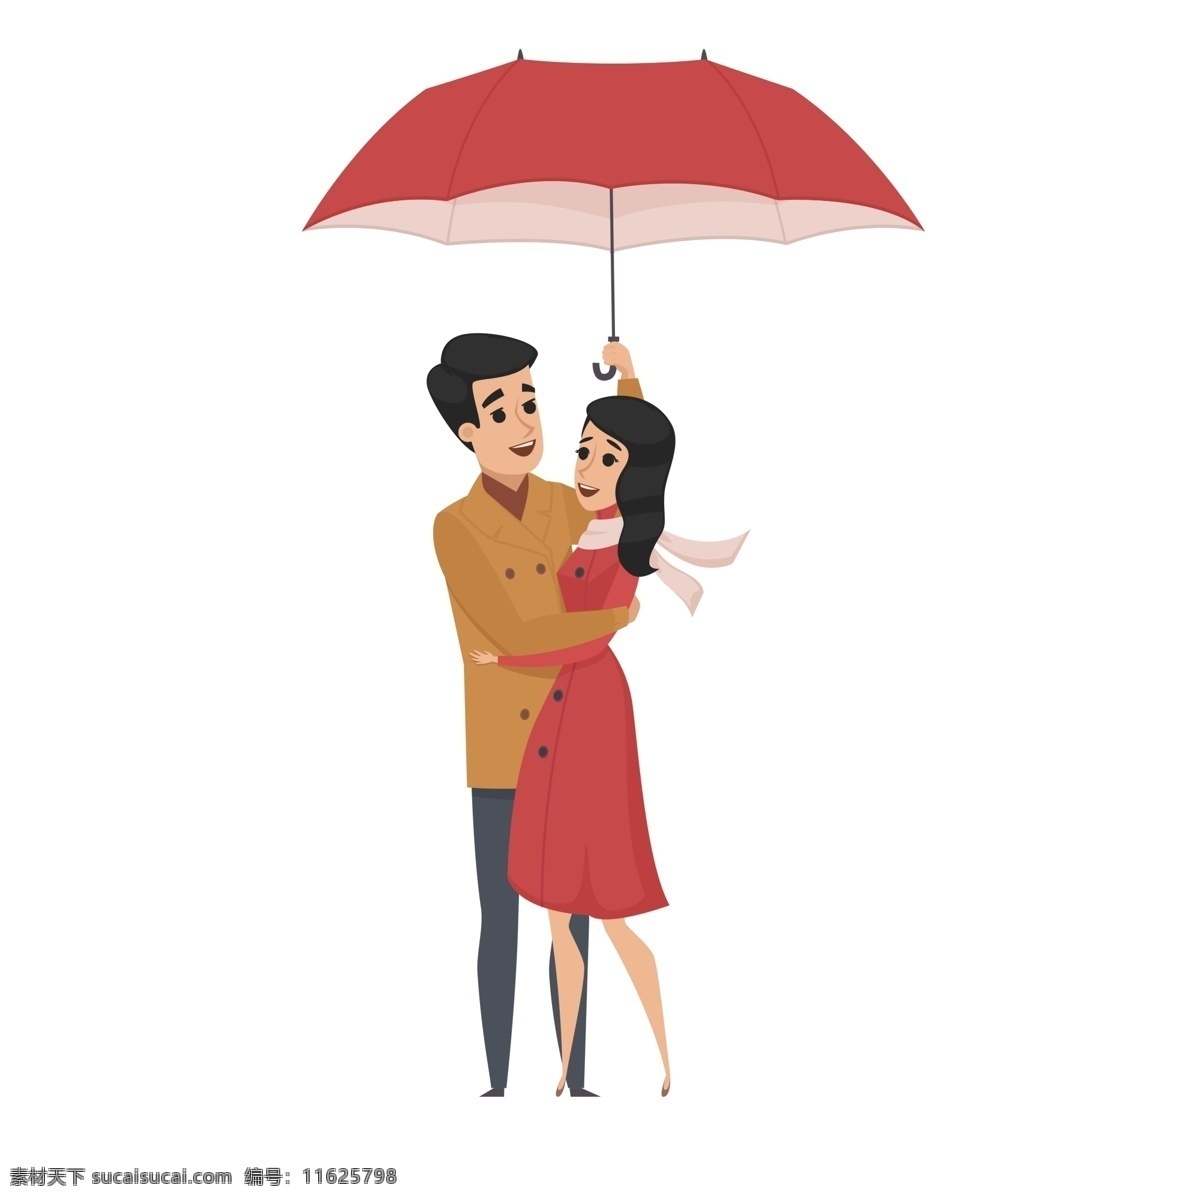 浪漫 雨天 情侣 拥抱 人物 浪漫人物 插画人物 雨天下雨天 情侣拥抱 雨伞下的情侣 可爱恩爱情侣 卡通人物